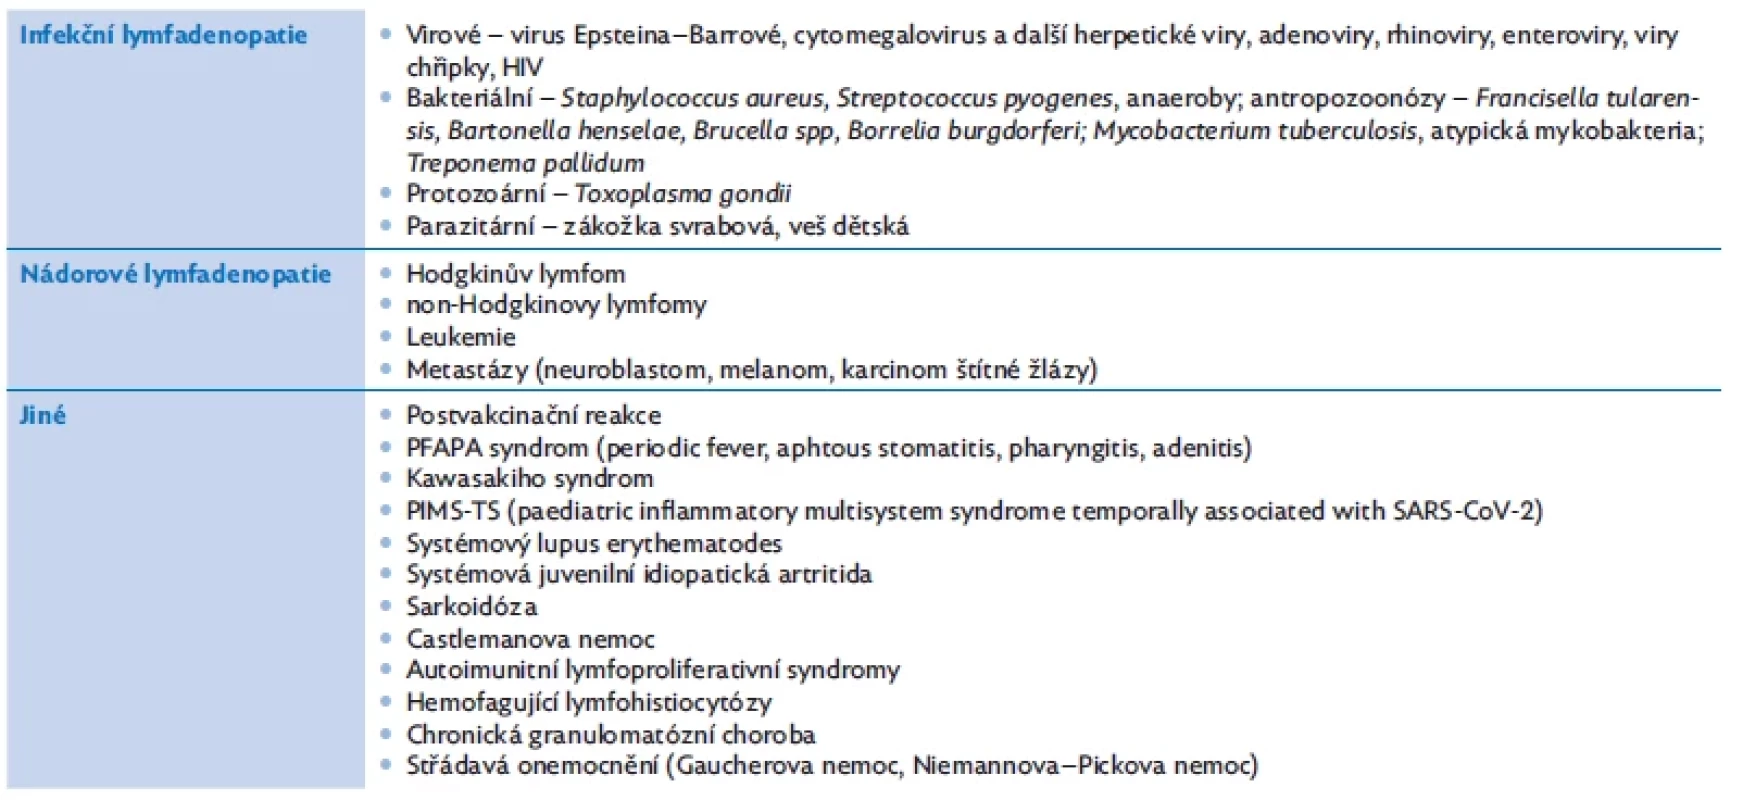 Diferenciální diagnostika lymfadenopatie